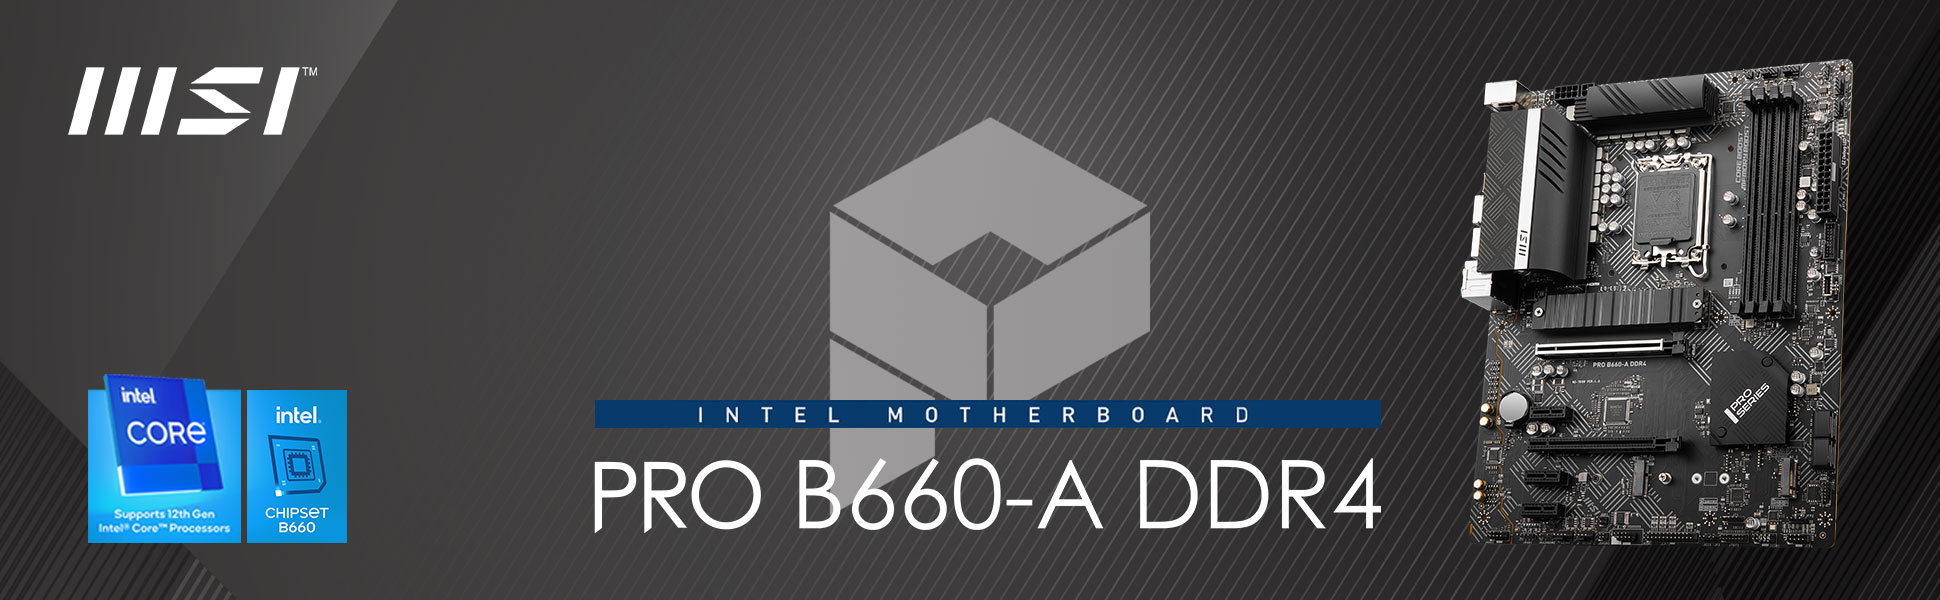 MSI PRO B660-A DDR4 LGA 1700 Intel B660 SATA 6Gb/s ATX Intel